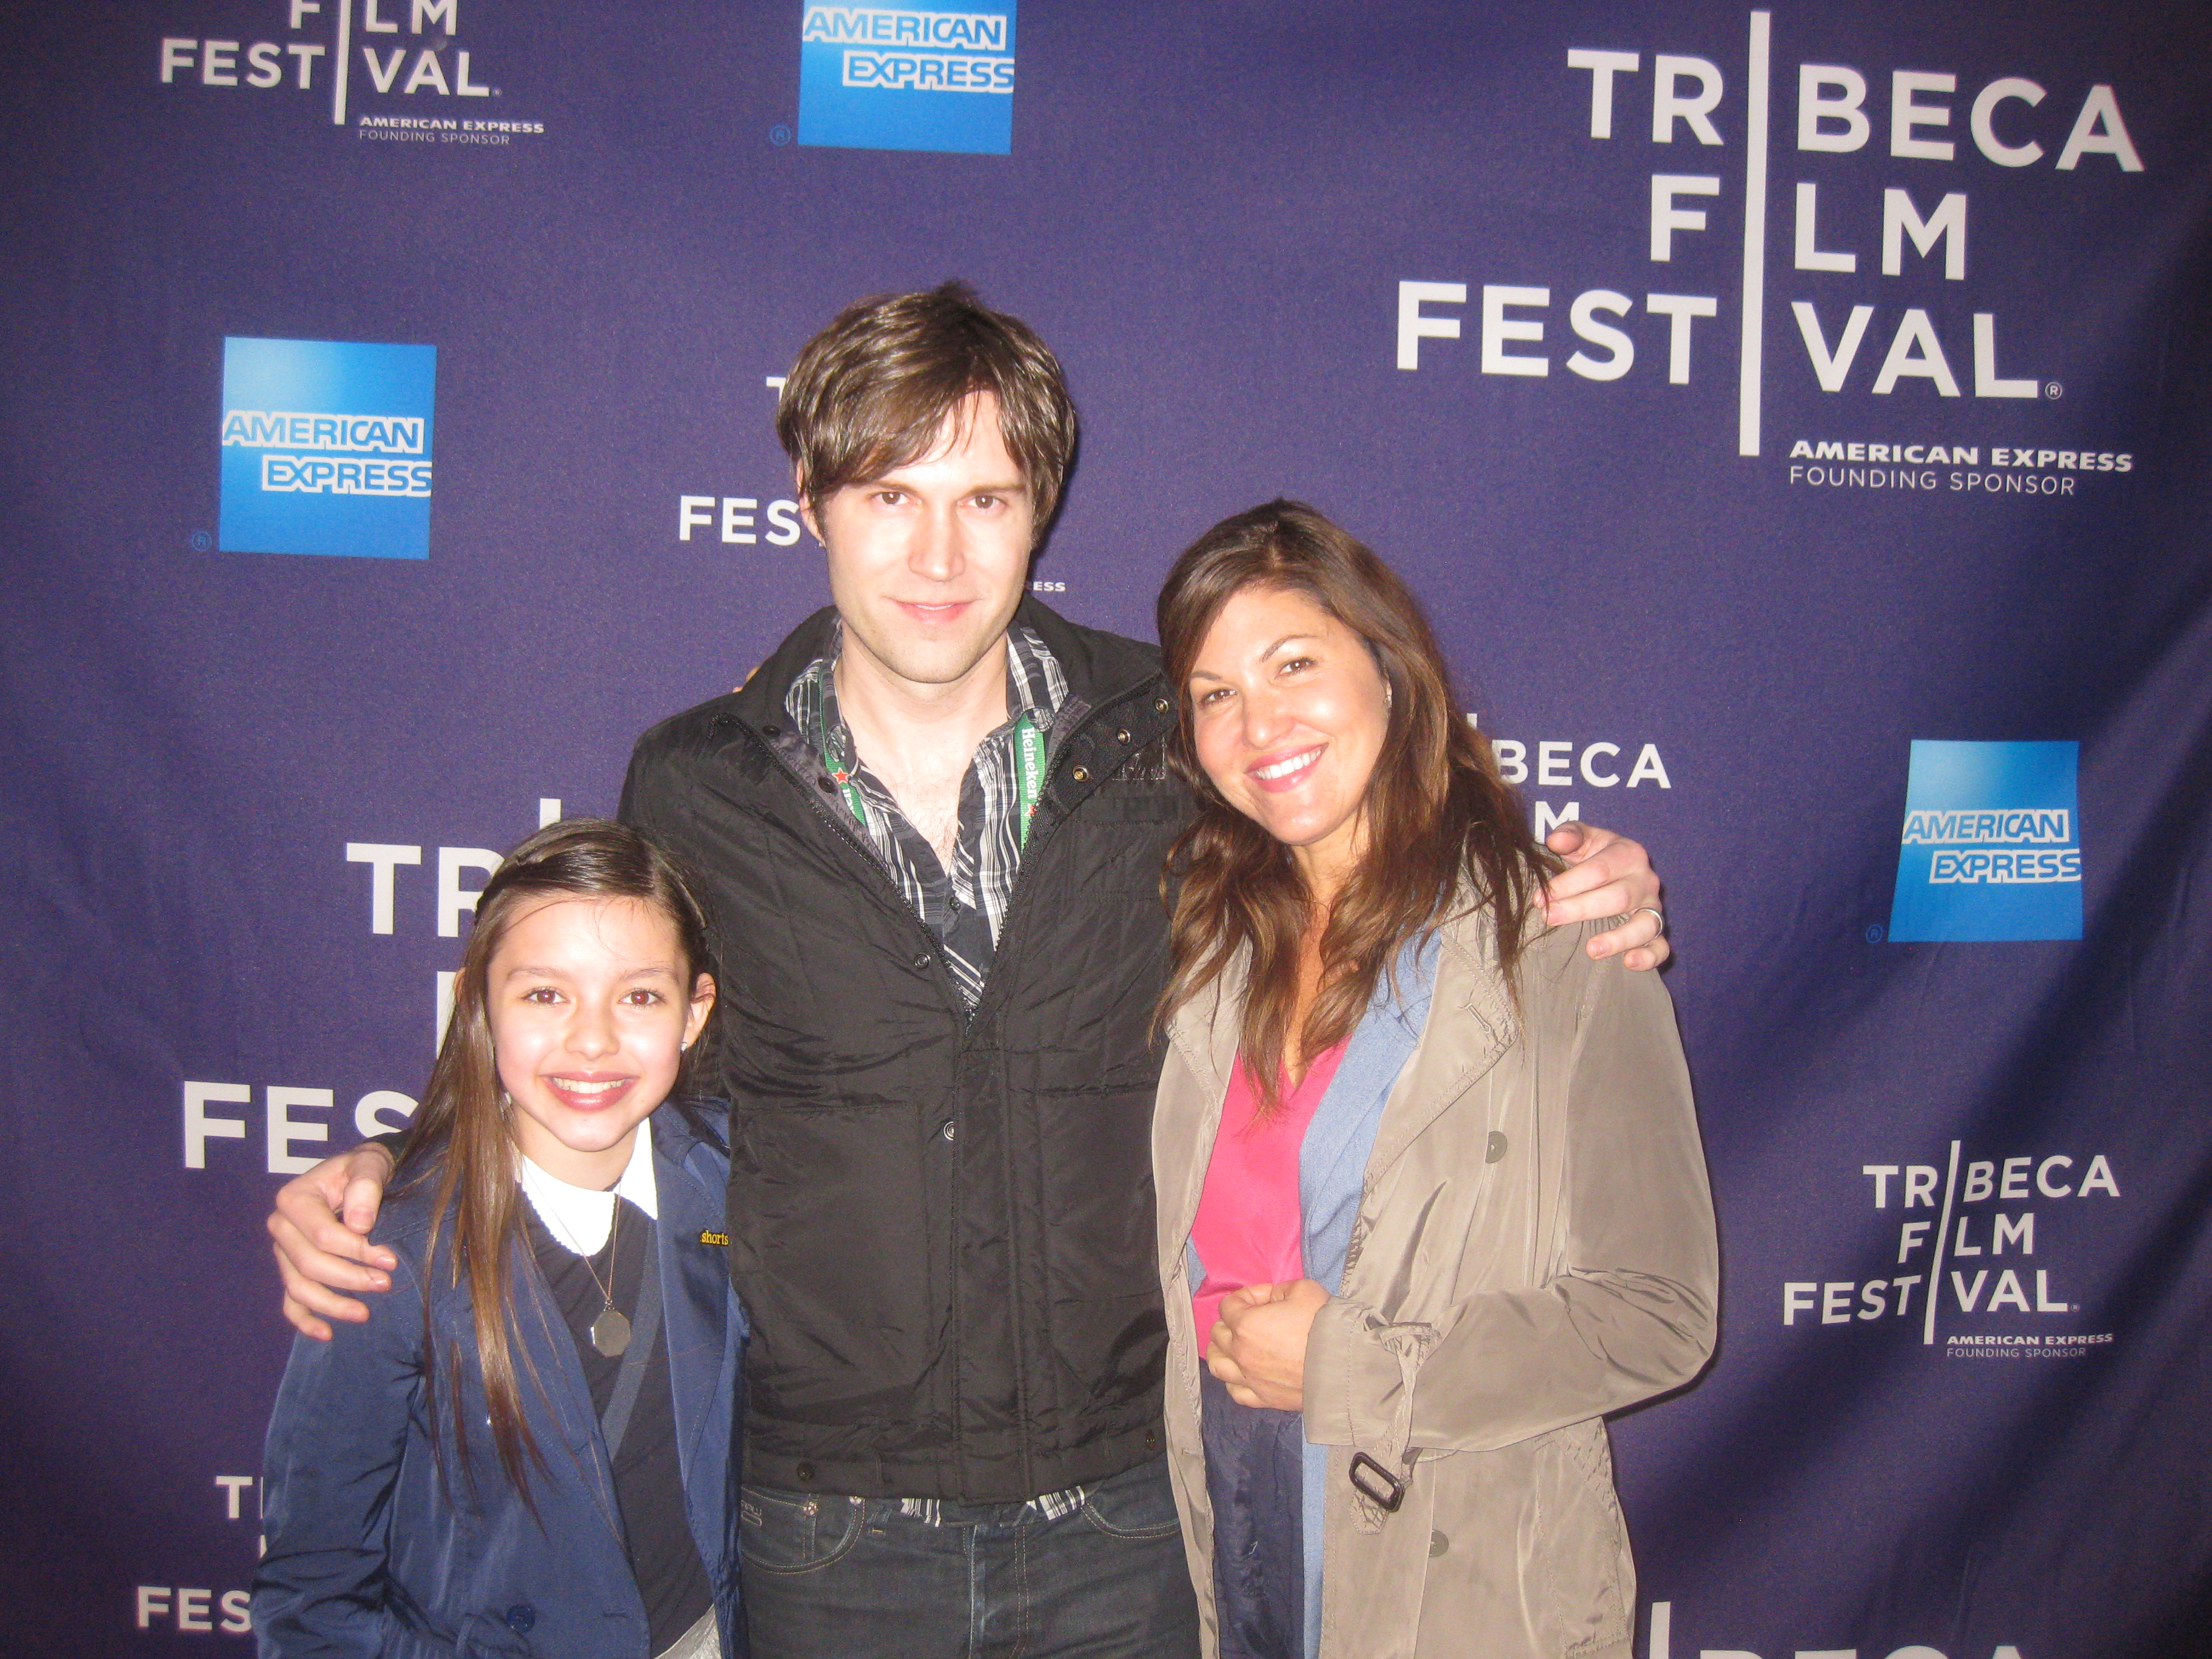 Dana Segal, Shawn Christensen and Fatima Ptacek at CURFEW in Tribeca Film Festival 2012